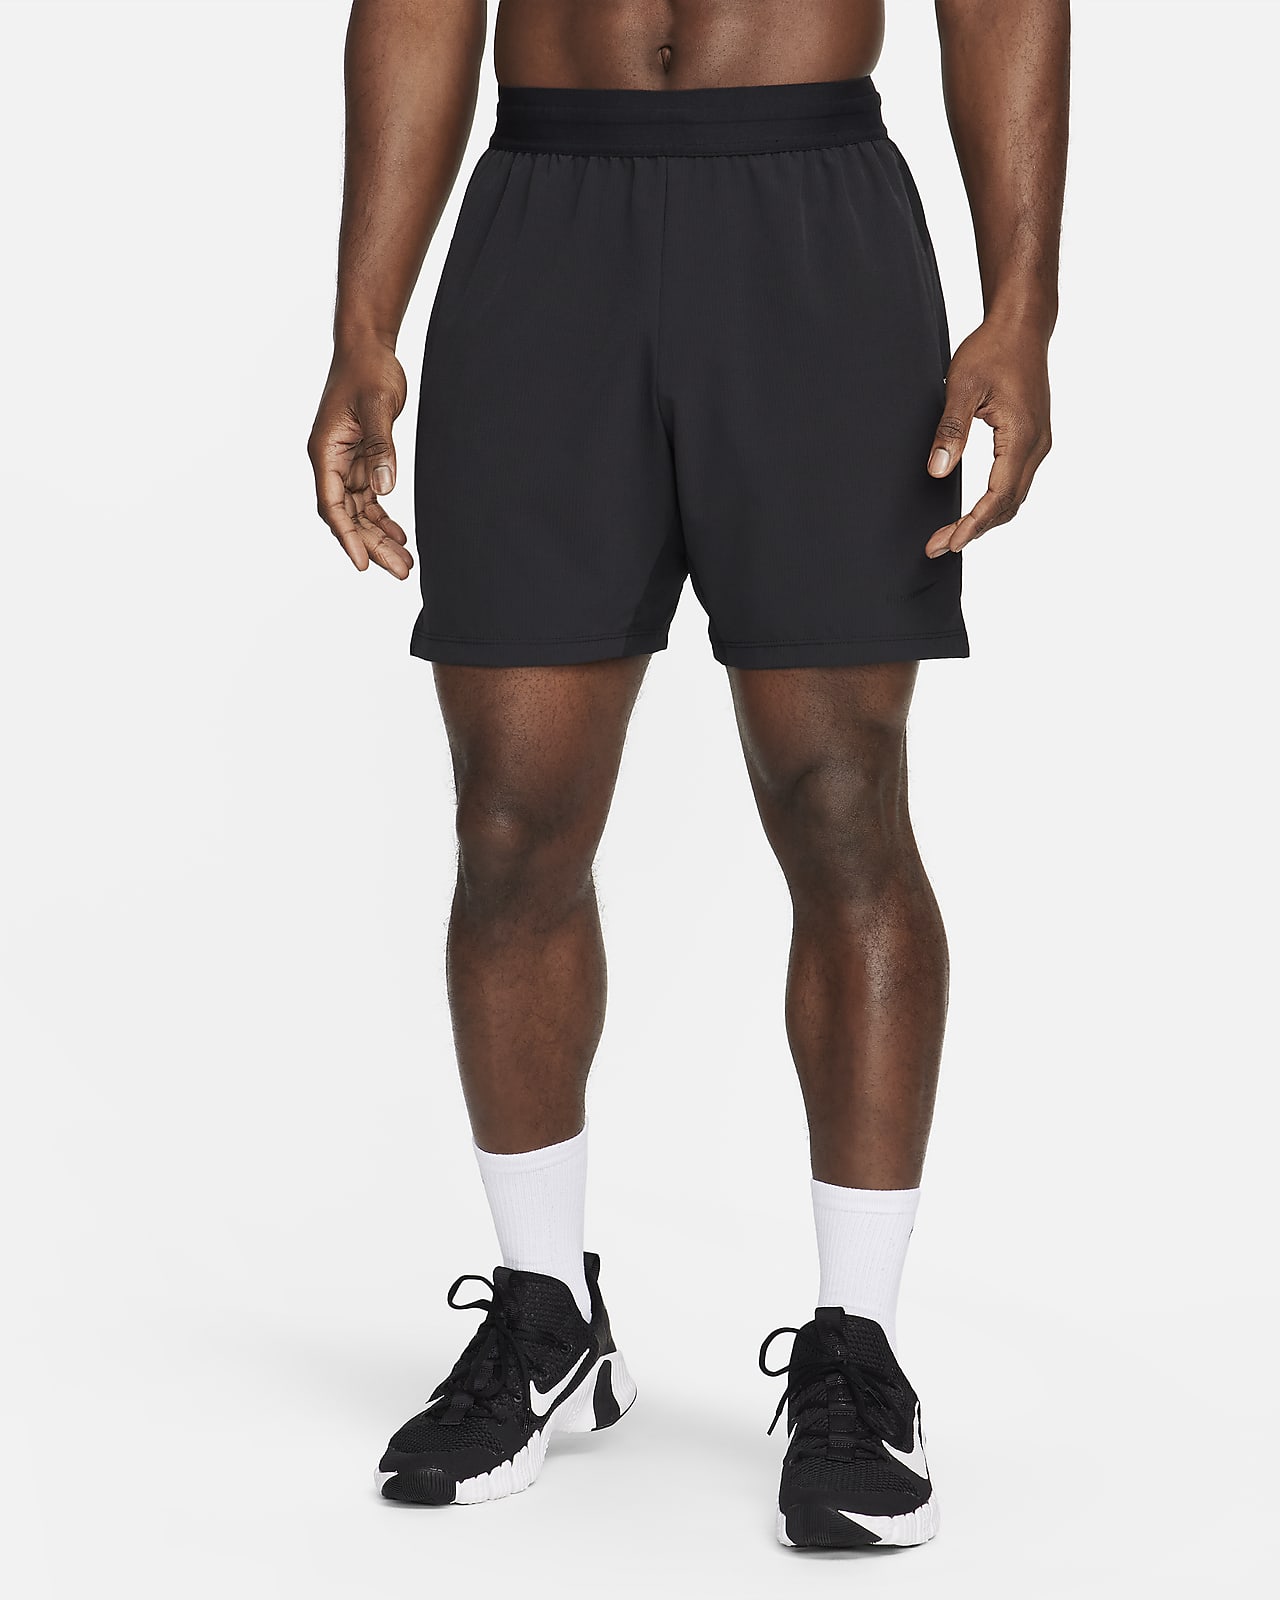 Ανδρικό σορτς Dri-FIT fitness χωρίς επένδυση Nike Flex Rep 4.0 18 cm